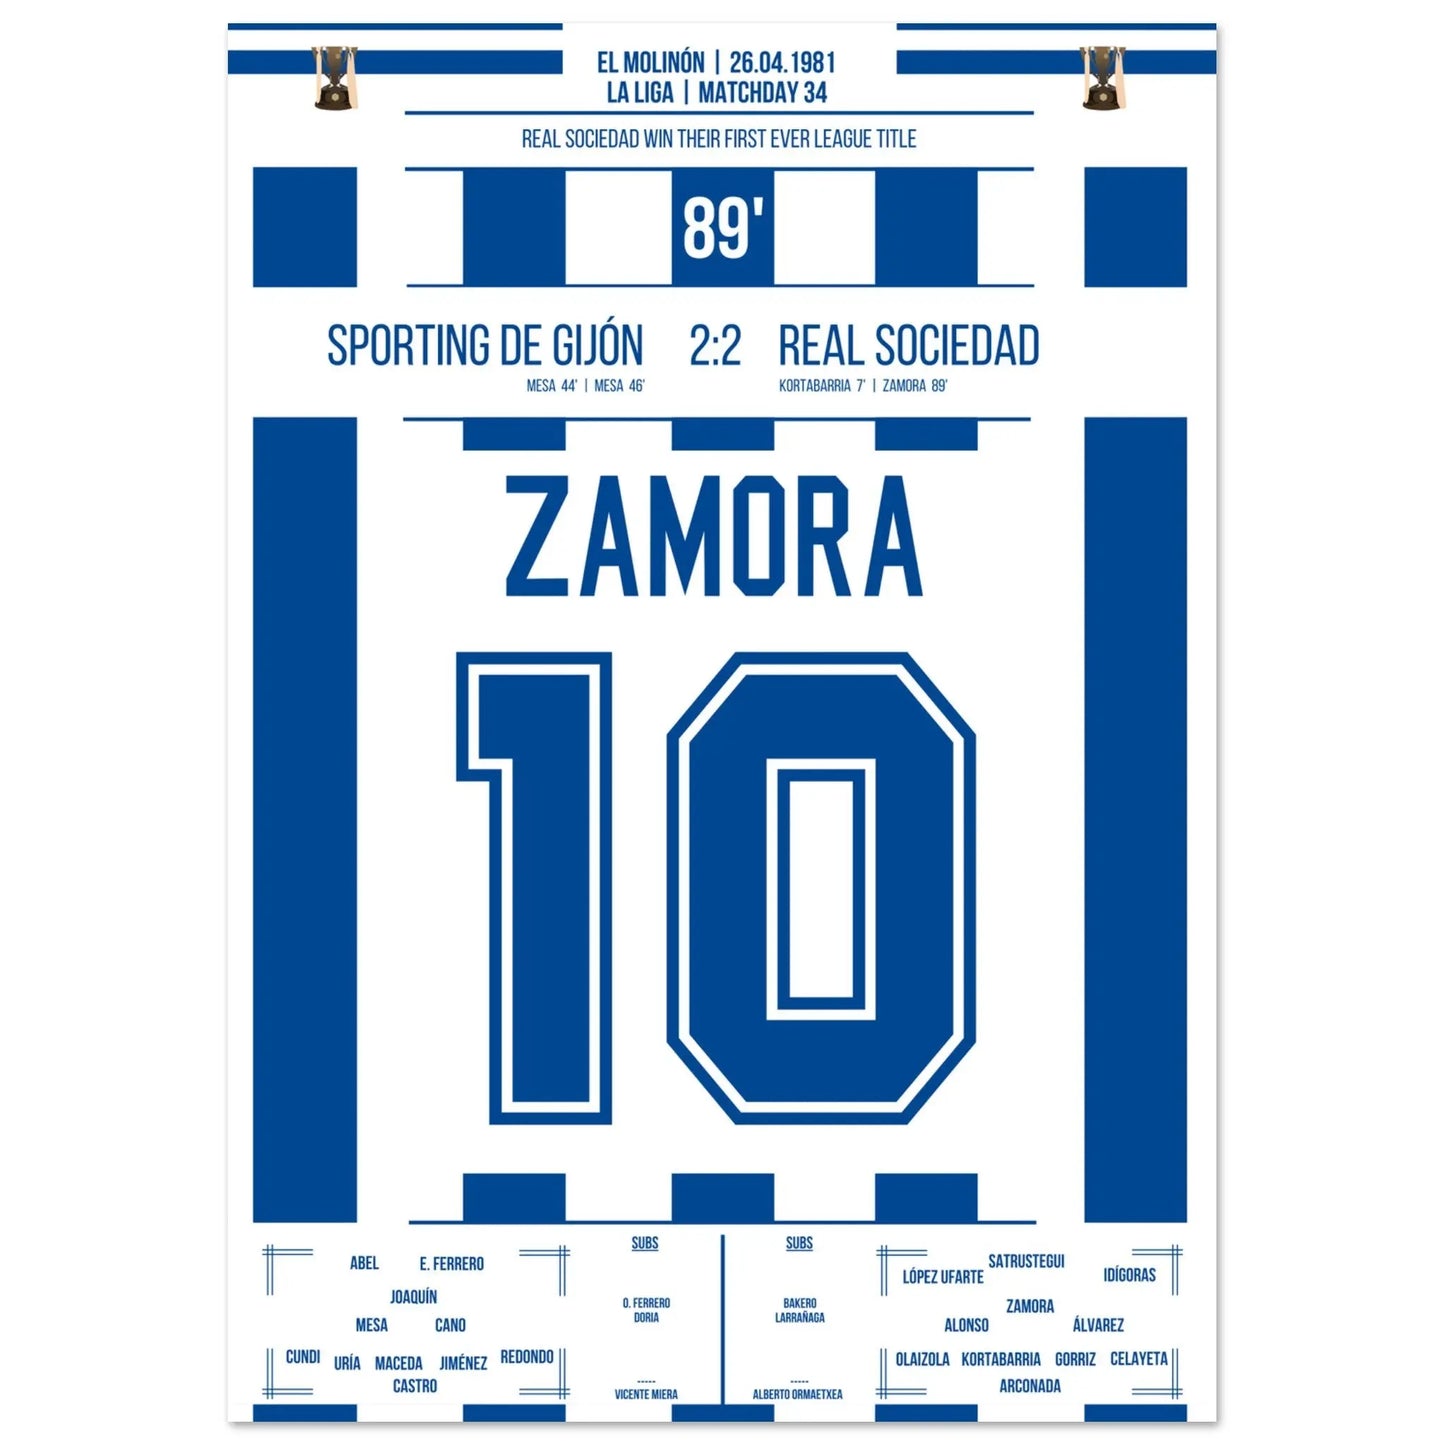 Le but de Zamora lors du premier championnat de Saint-Sébastien de l'histoire du club